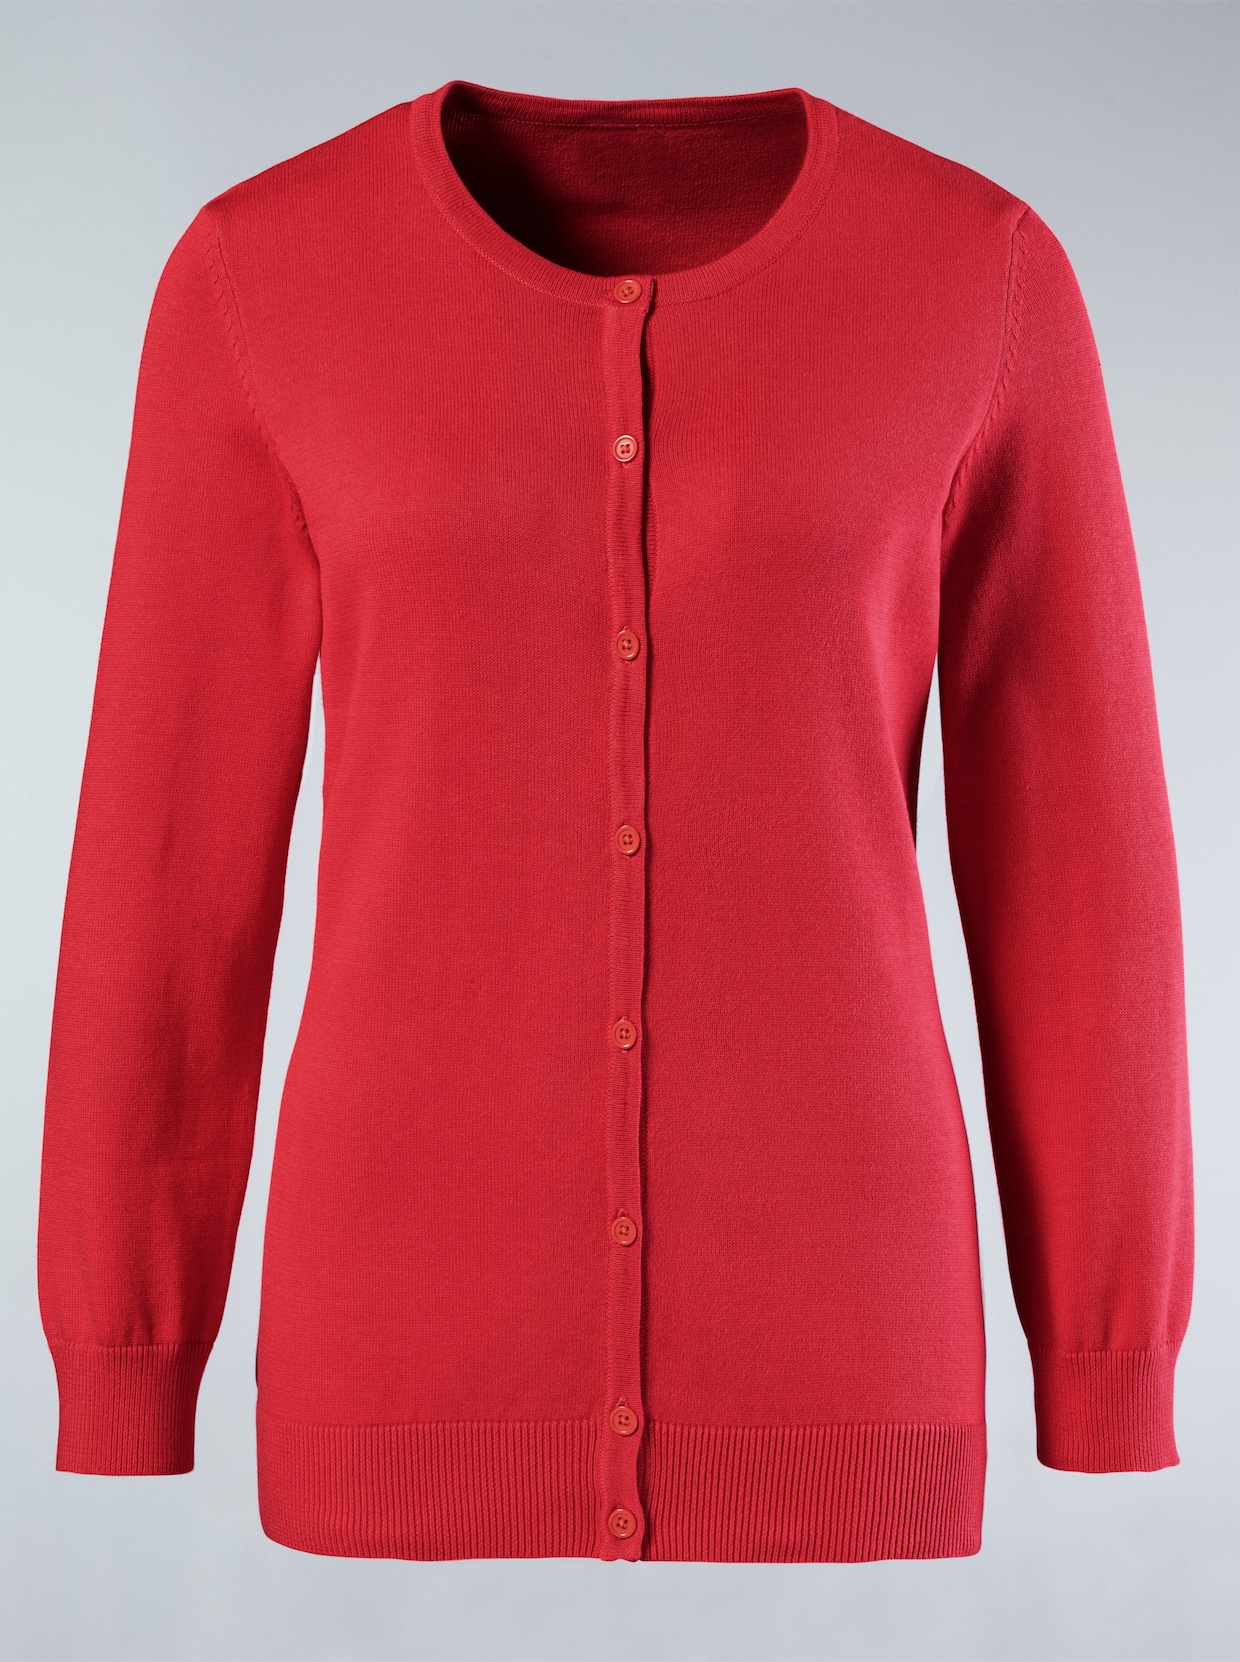 Pletený sveter - Koralová červená